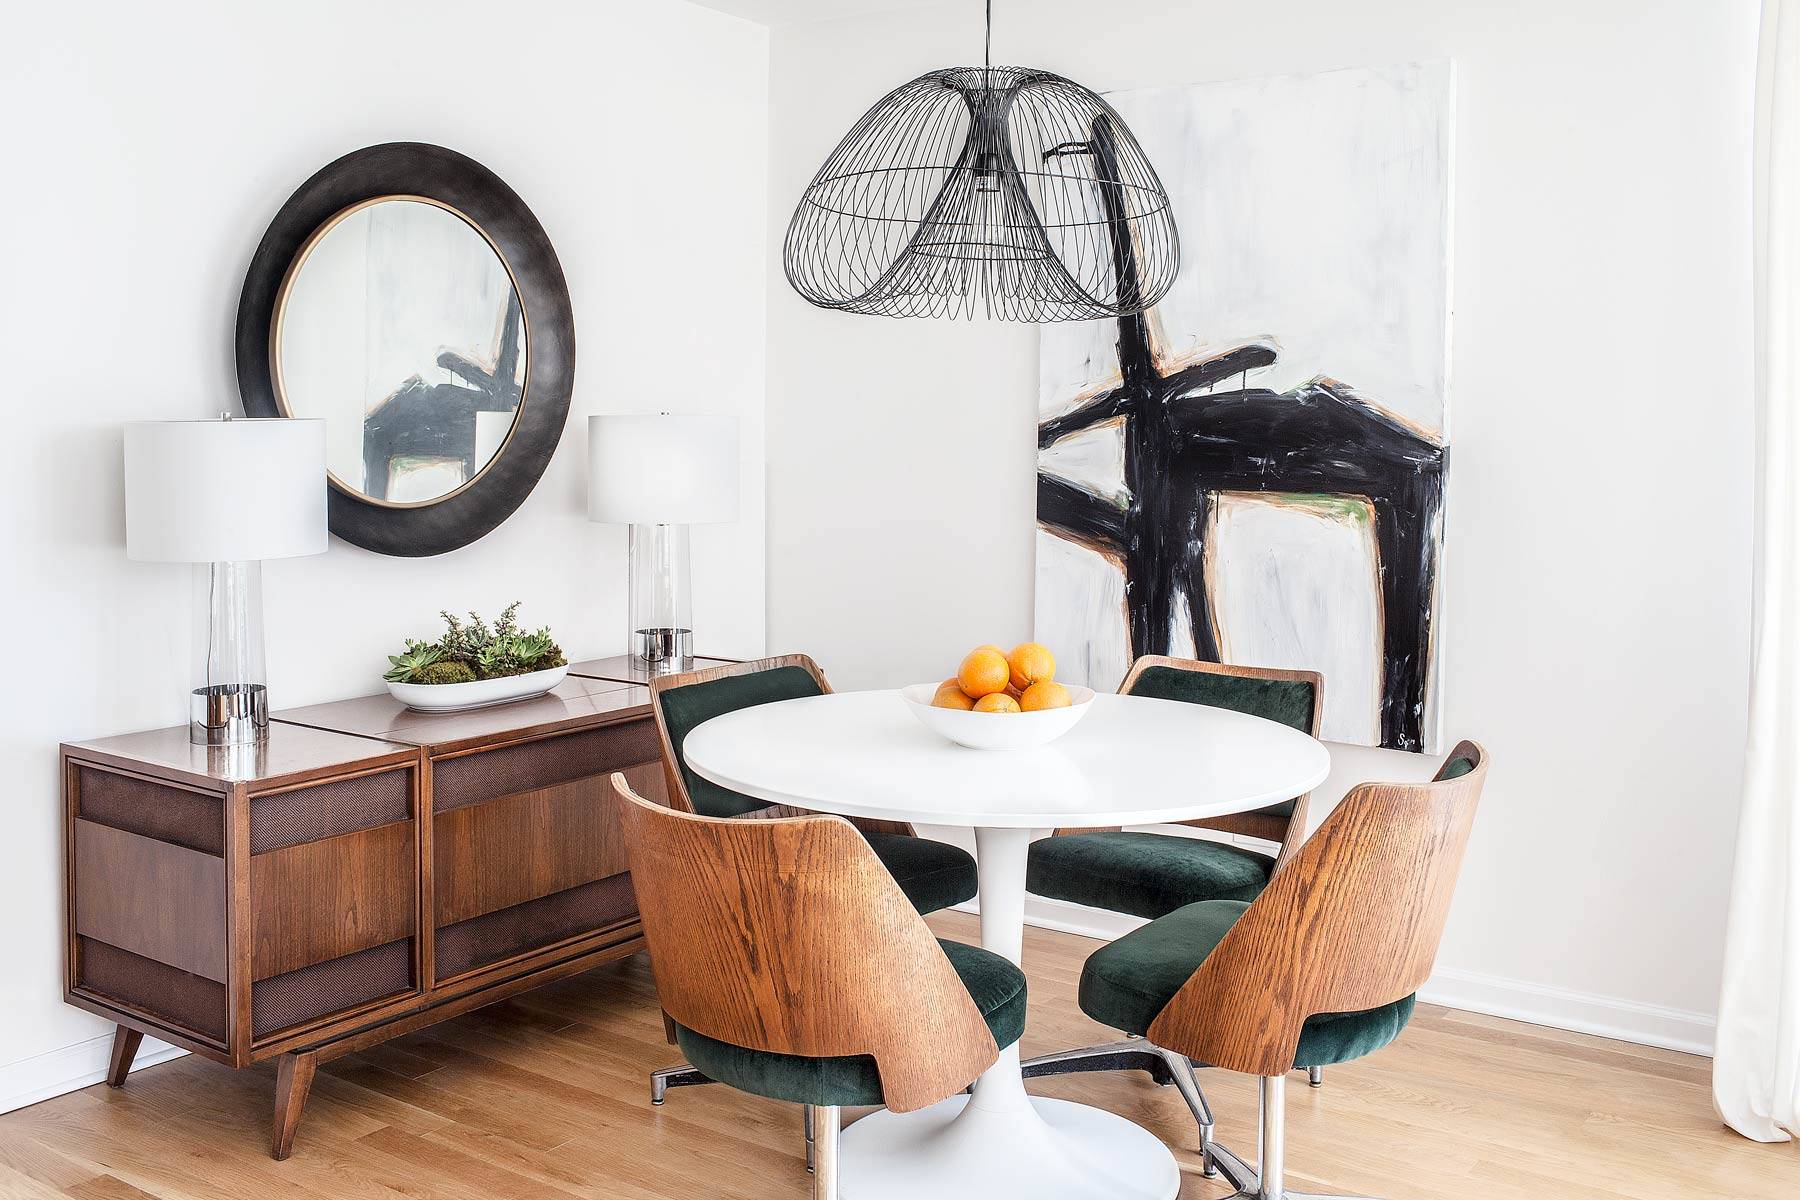 Nếu không gian phòng ăn của bạn khá “khiêm tốn” thì có thể tham khảo mẫu thiết kế này. Chiếc bàn tròn nhỏ xinh với bộ 4 chiếc ghế gỗ vững chãi, kết hợp phần đệm ghế êm ái với gam màu xanh rêu nổi bật tạo điểm nhấn vô cùng thời trang!